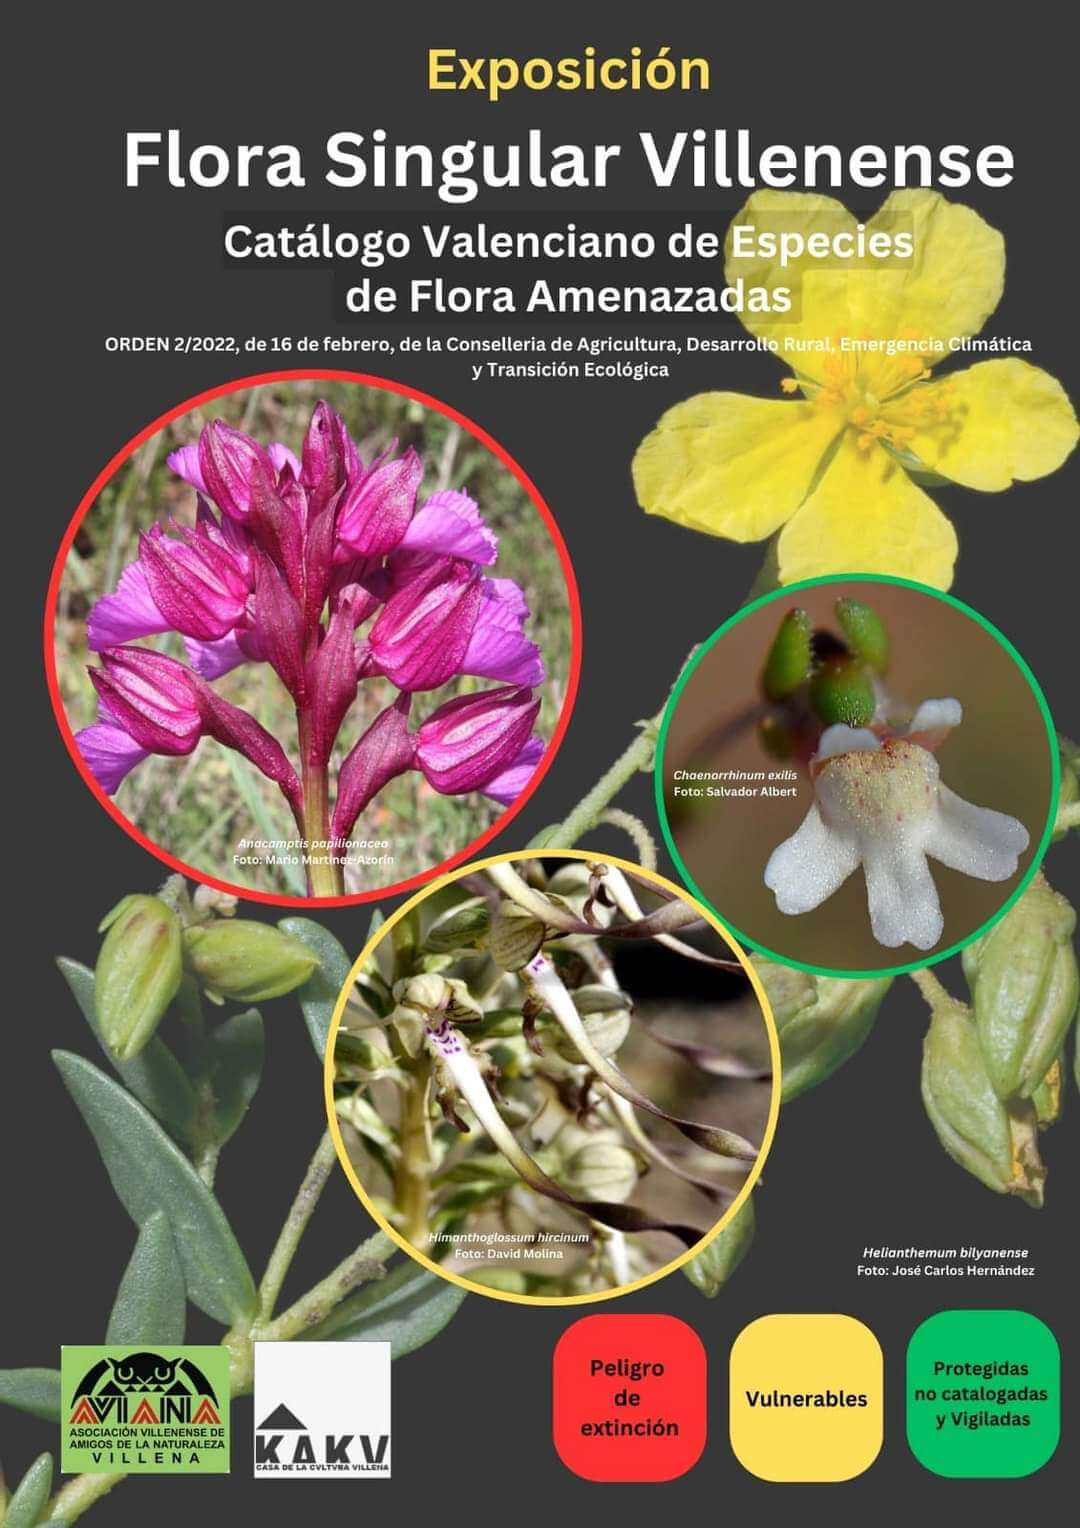 Aviana organiza una charla  a cargo de María Ángeles Alonso y una exposición sobre la flora singular villenense